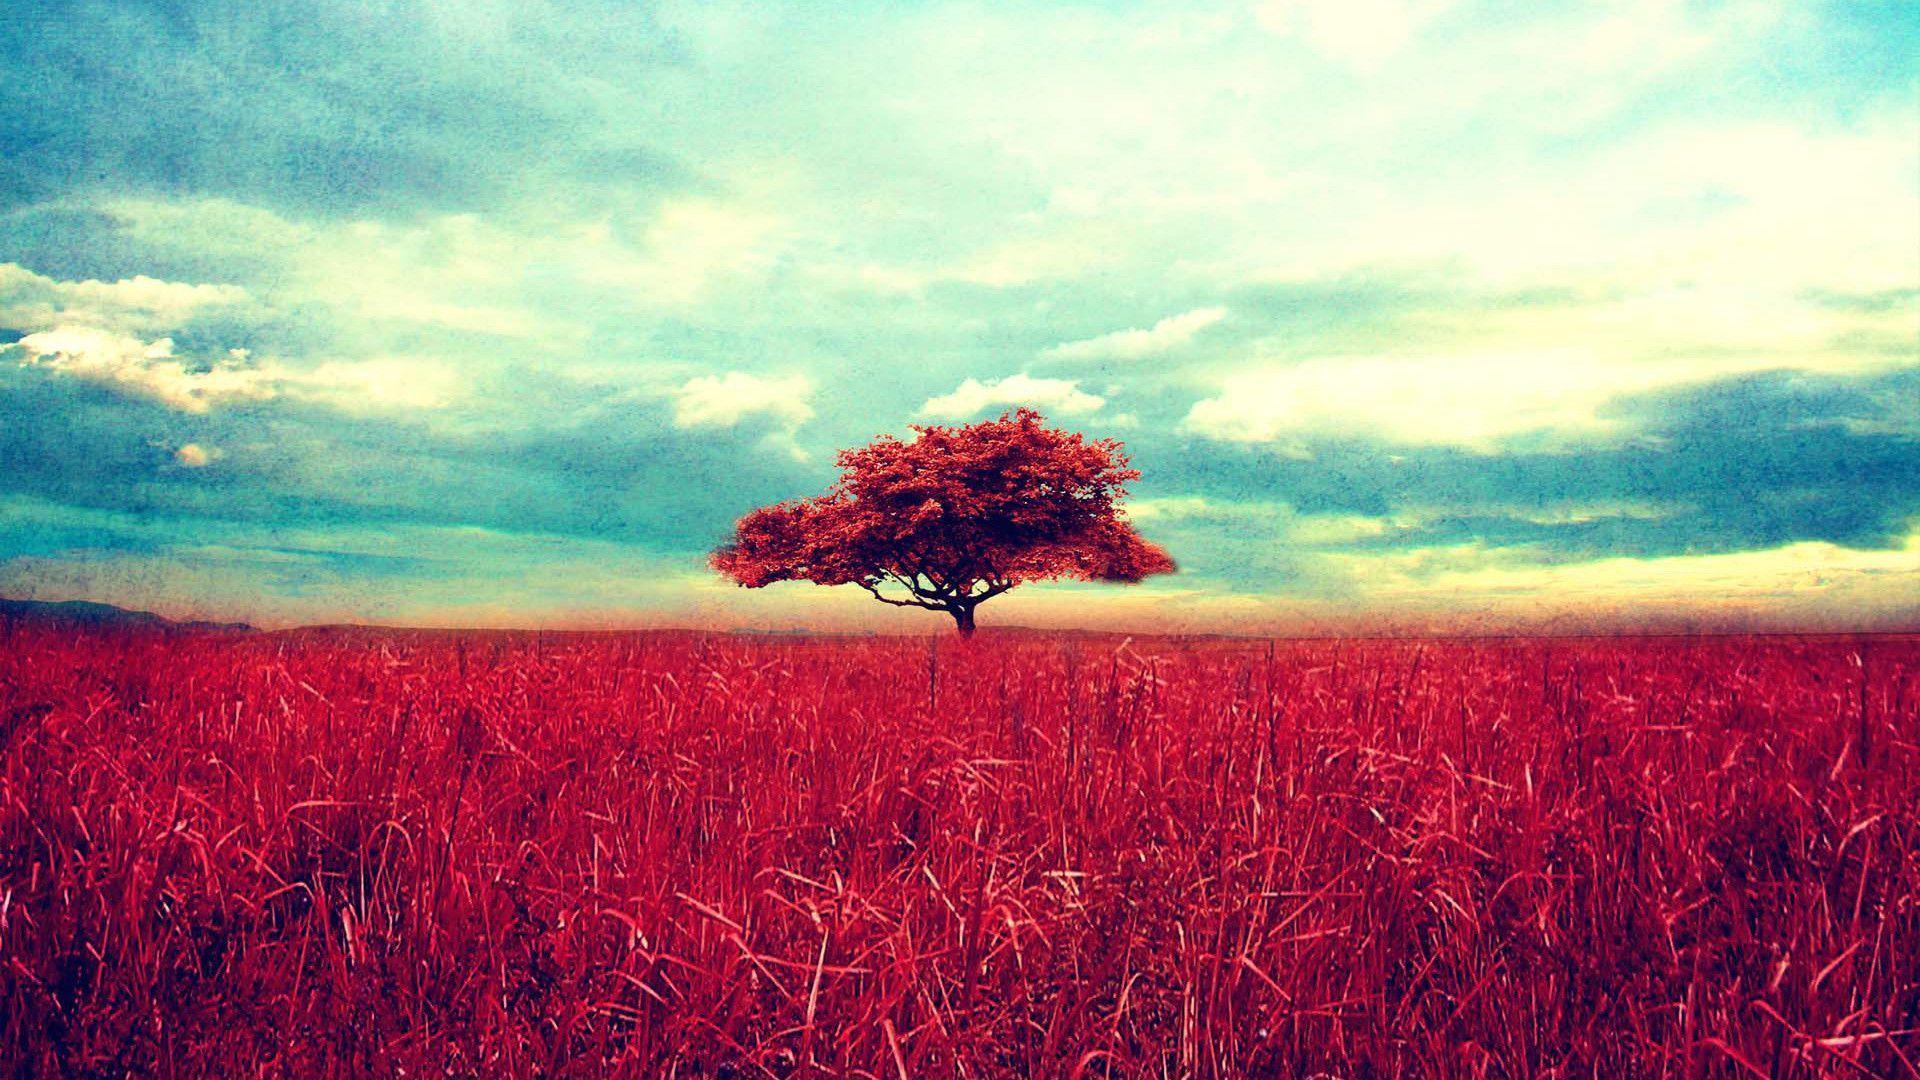 Red Tree In Field - HD Wallpaper 